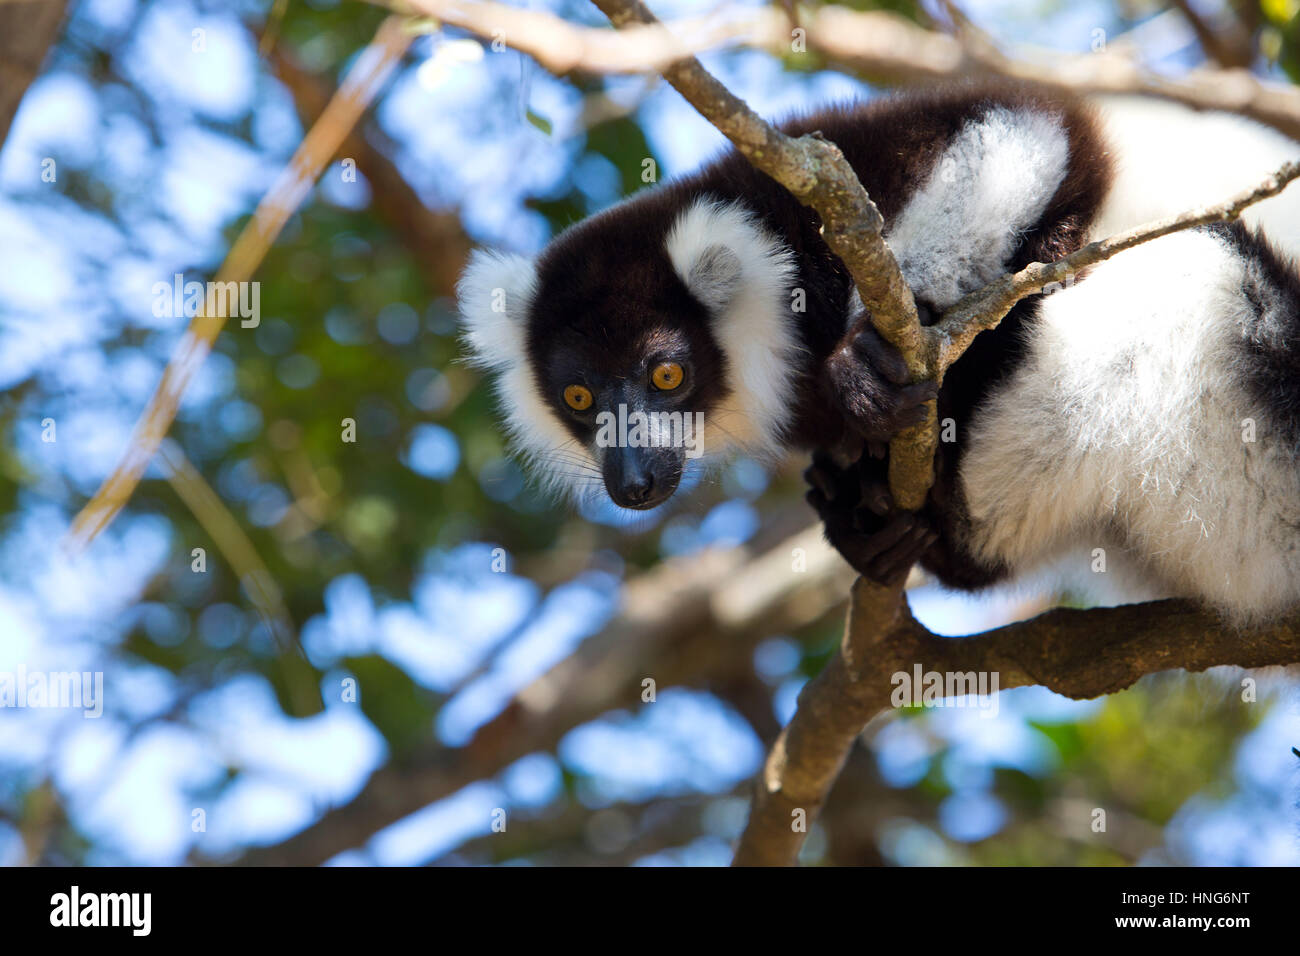 L'Indri est le plus grand des lémuriens vivant. Le noir et blanc en couleur, l'Indri est célèbre pour son gémissement étrange qui sonne un peu comme le chant d'un rorqual à bosse Banque D'Images